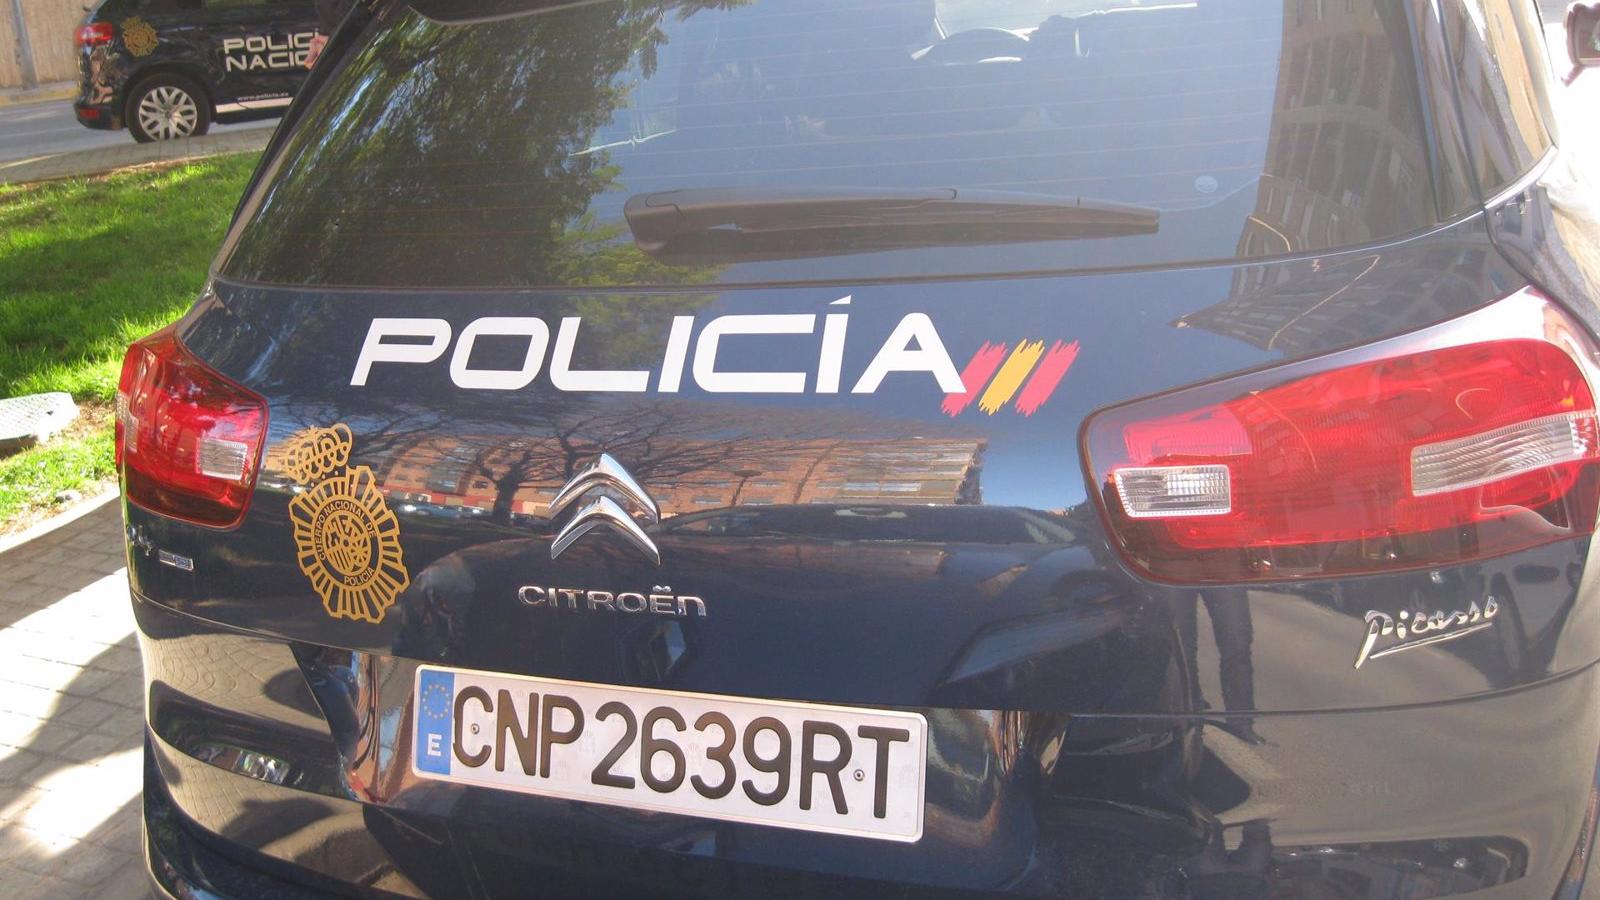 Policías salvan a un hombre que sufrió un grave corte en el brazo en un accidente laboral en Torrejón de Ardoz